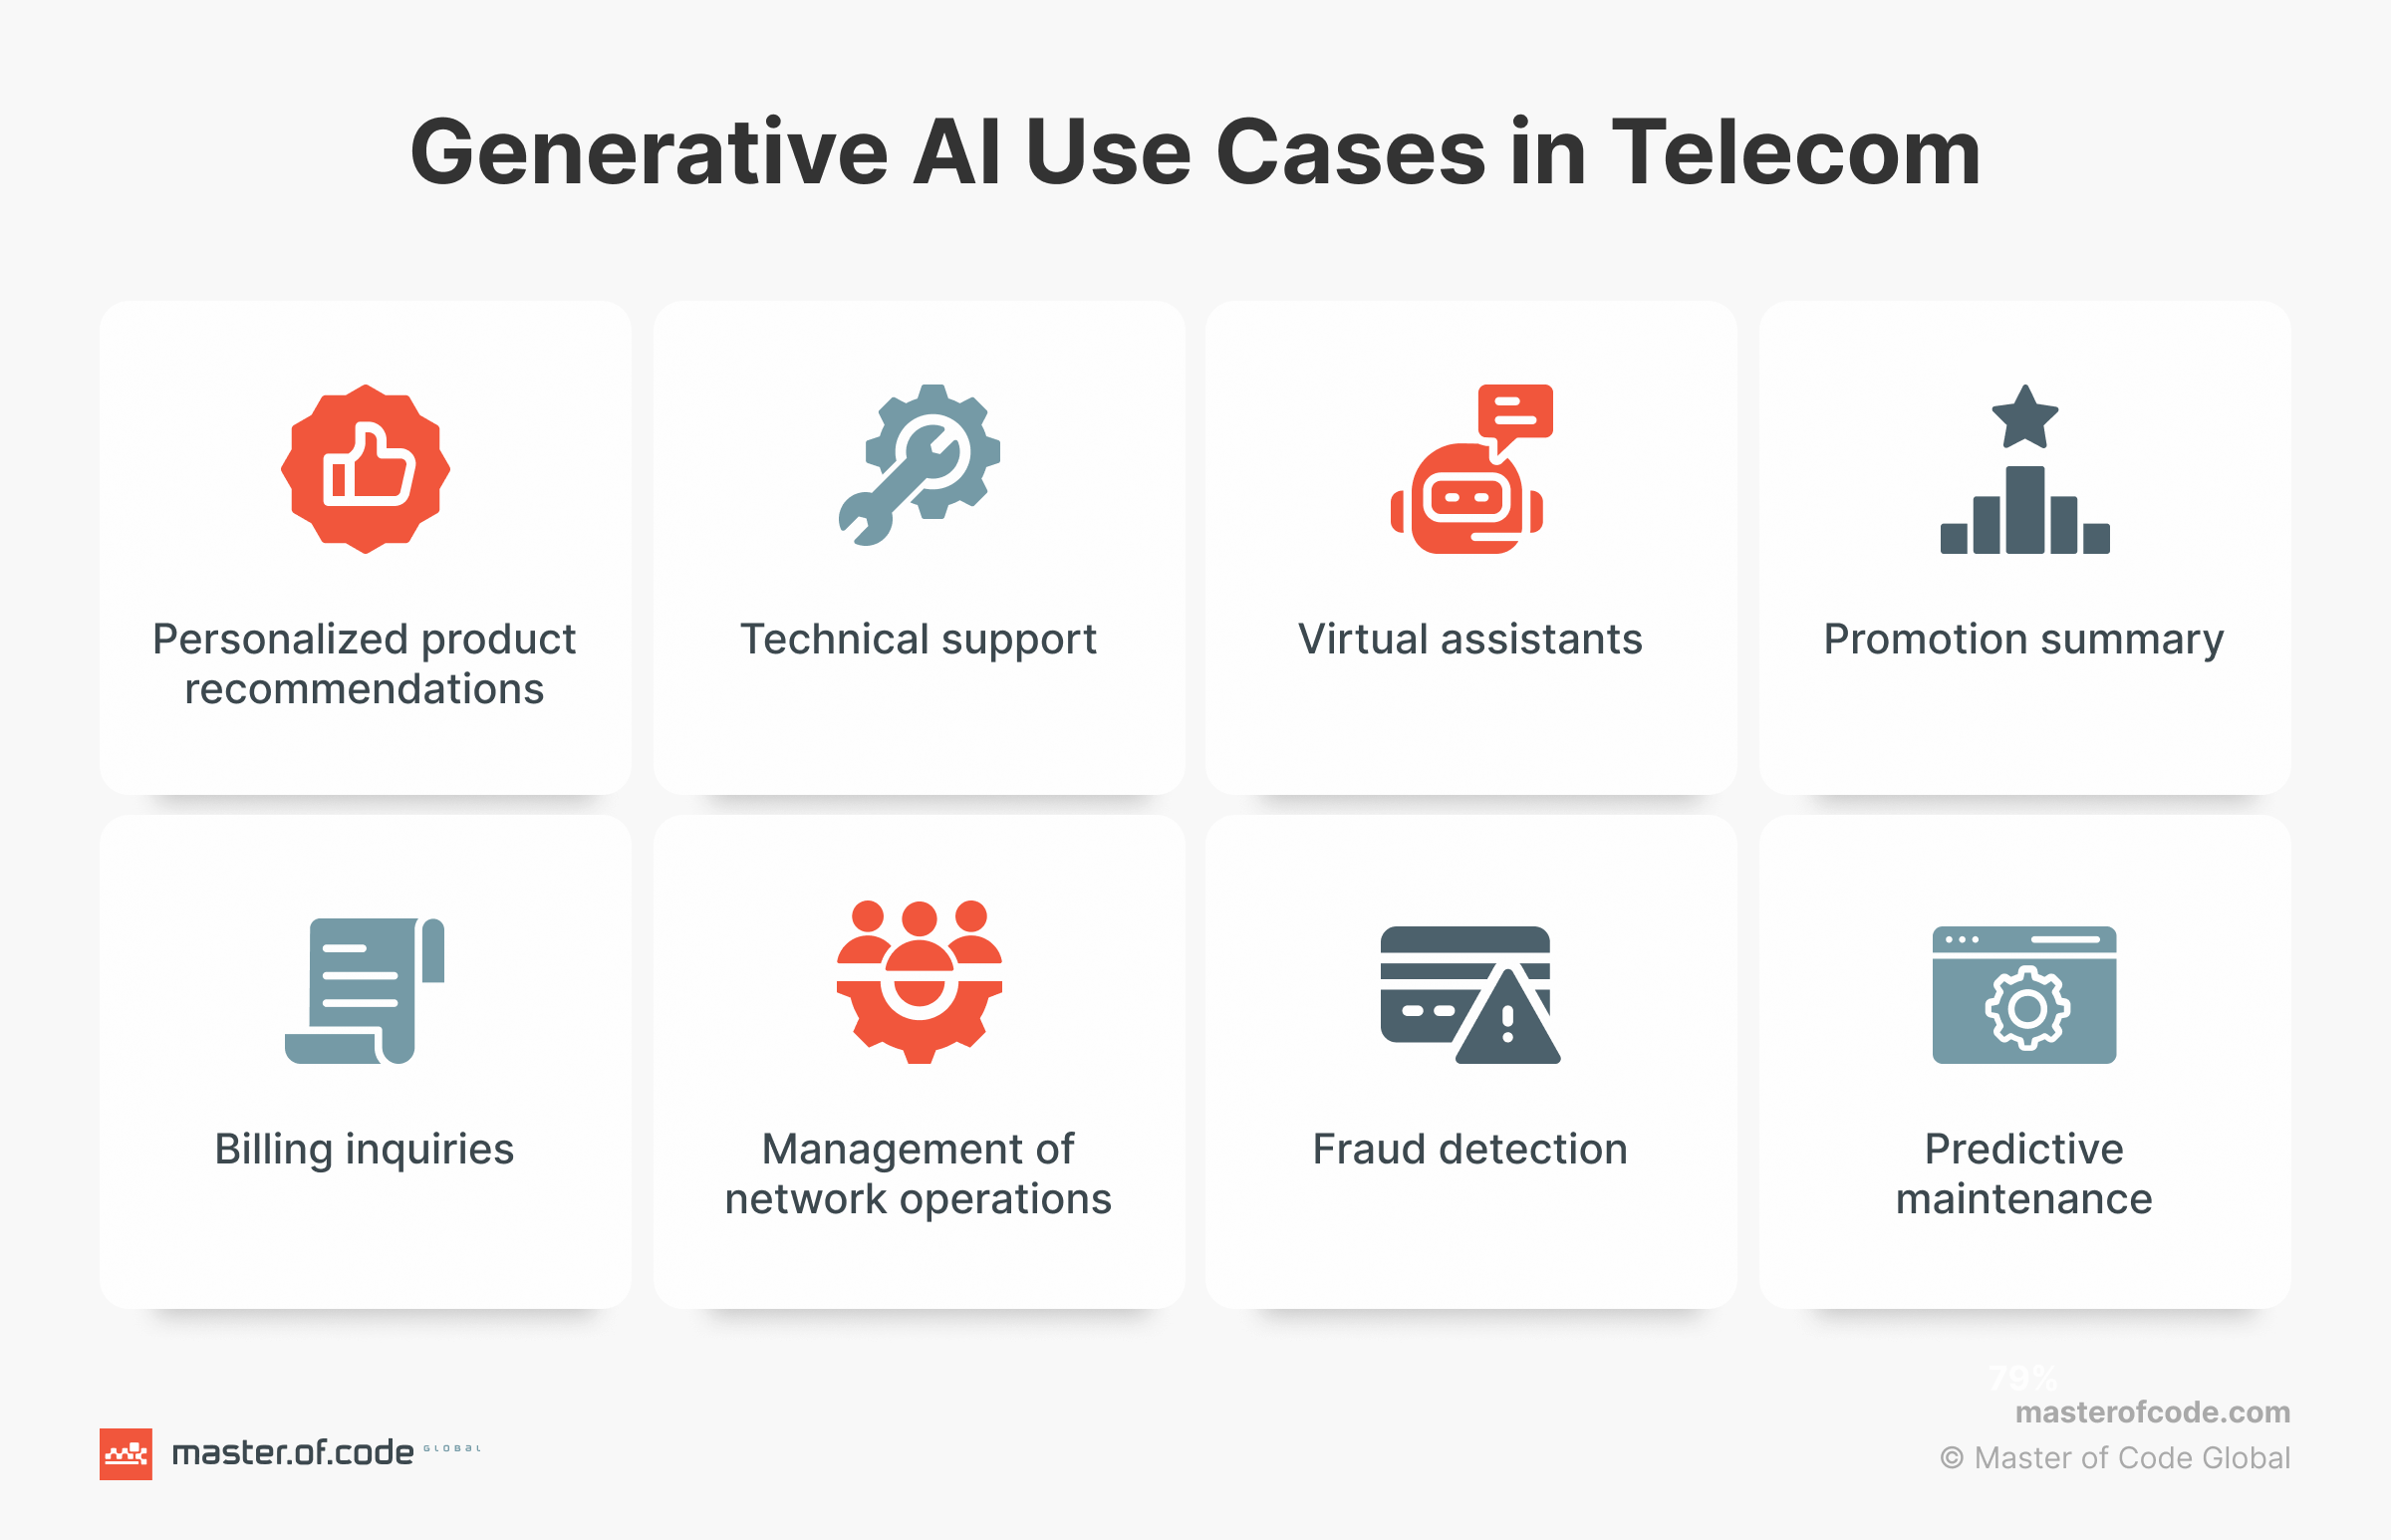 Gen AI Use Cases in Telecom